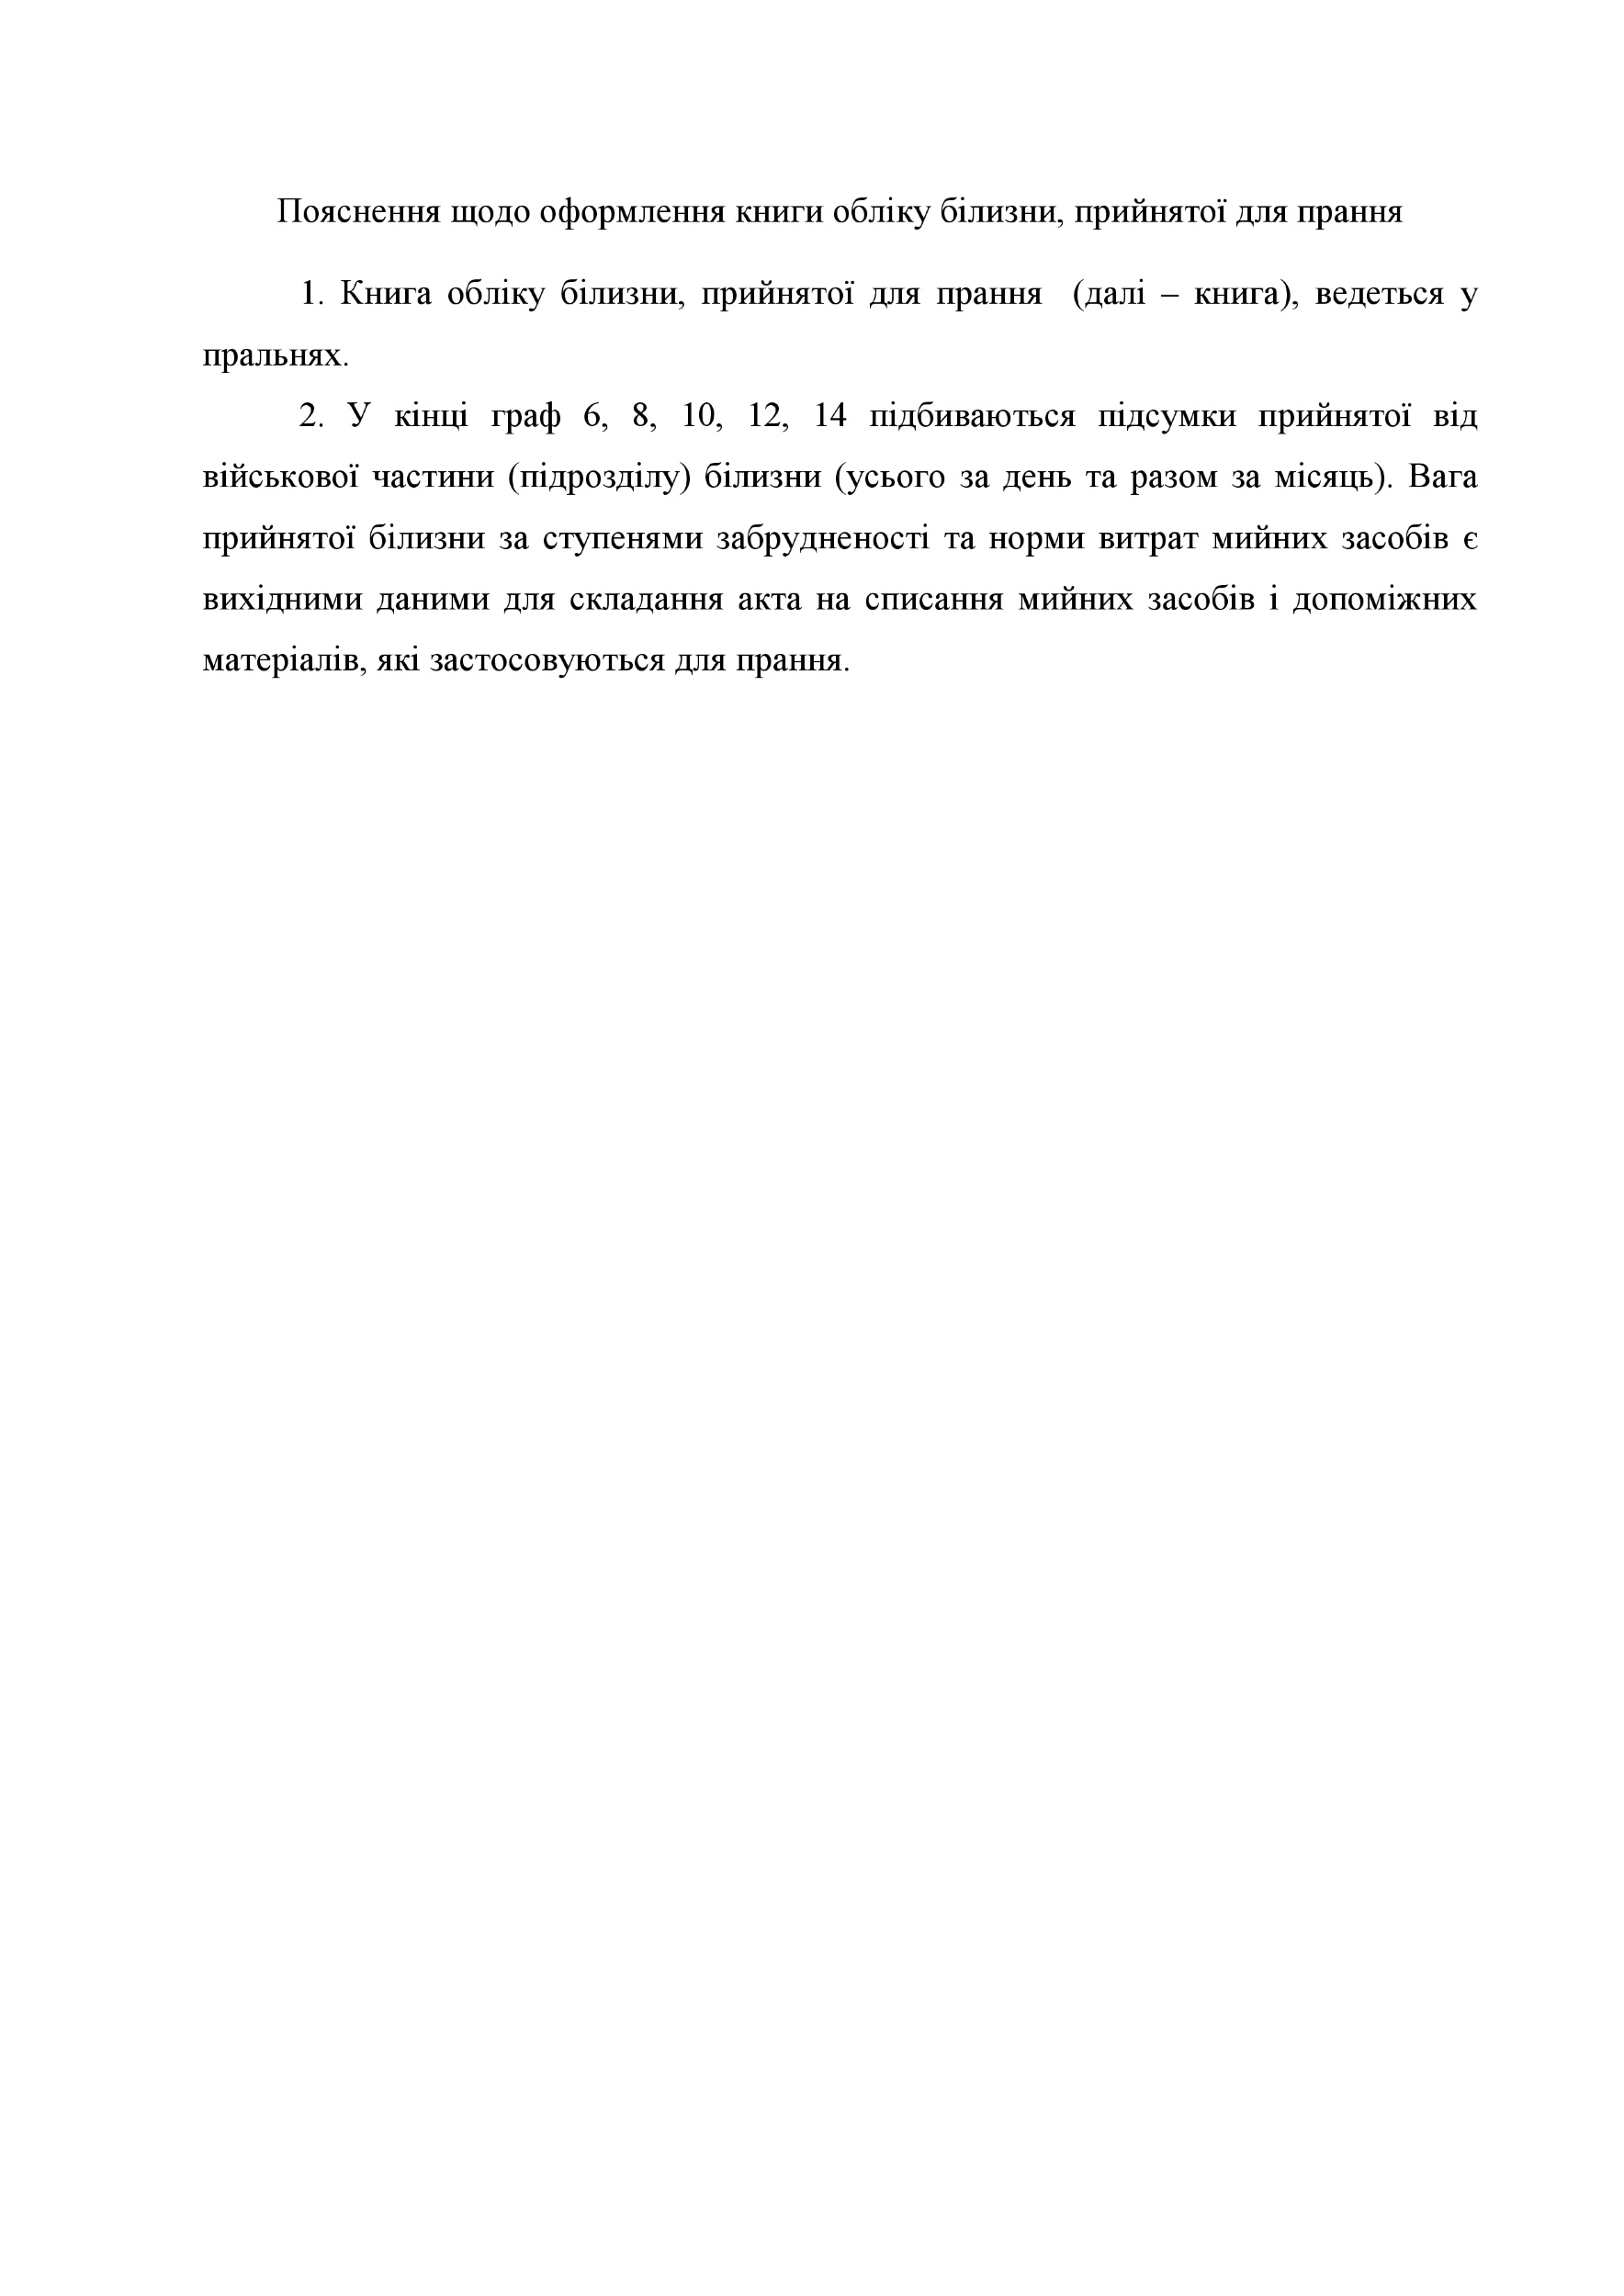 Книга обліку білизни прийнятої для прання, додаток 97. Автор — Міністерство оборони України. 